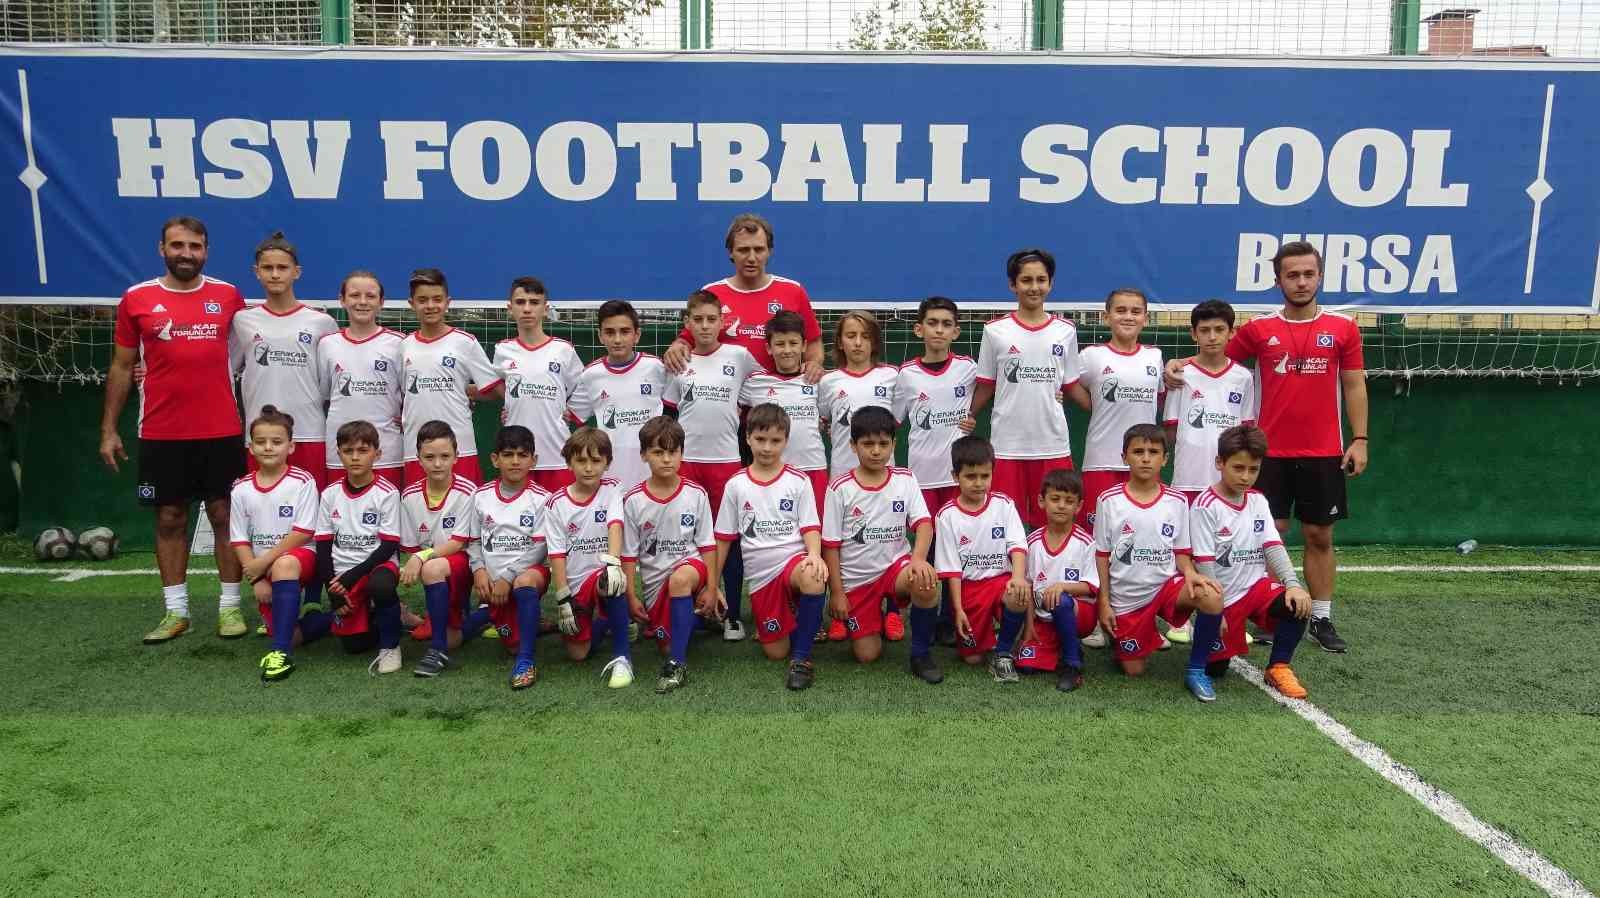 Hsv Hamburg İçin Futbolcu Seçmeleri Başlıyor